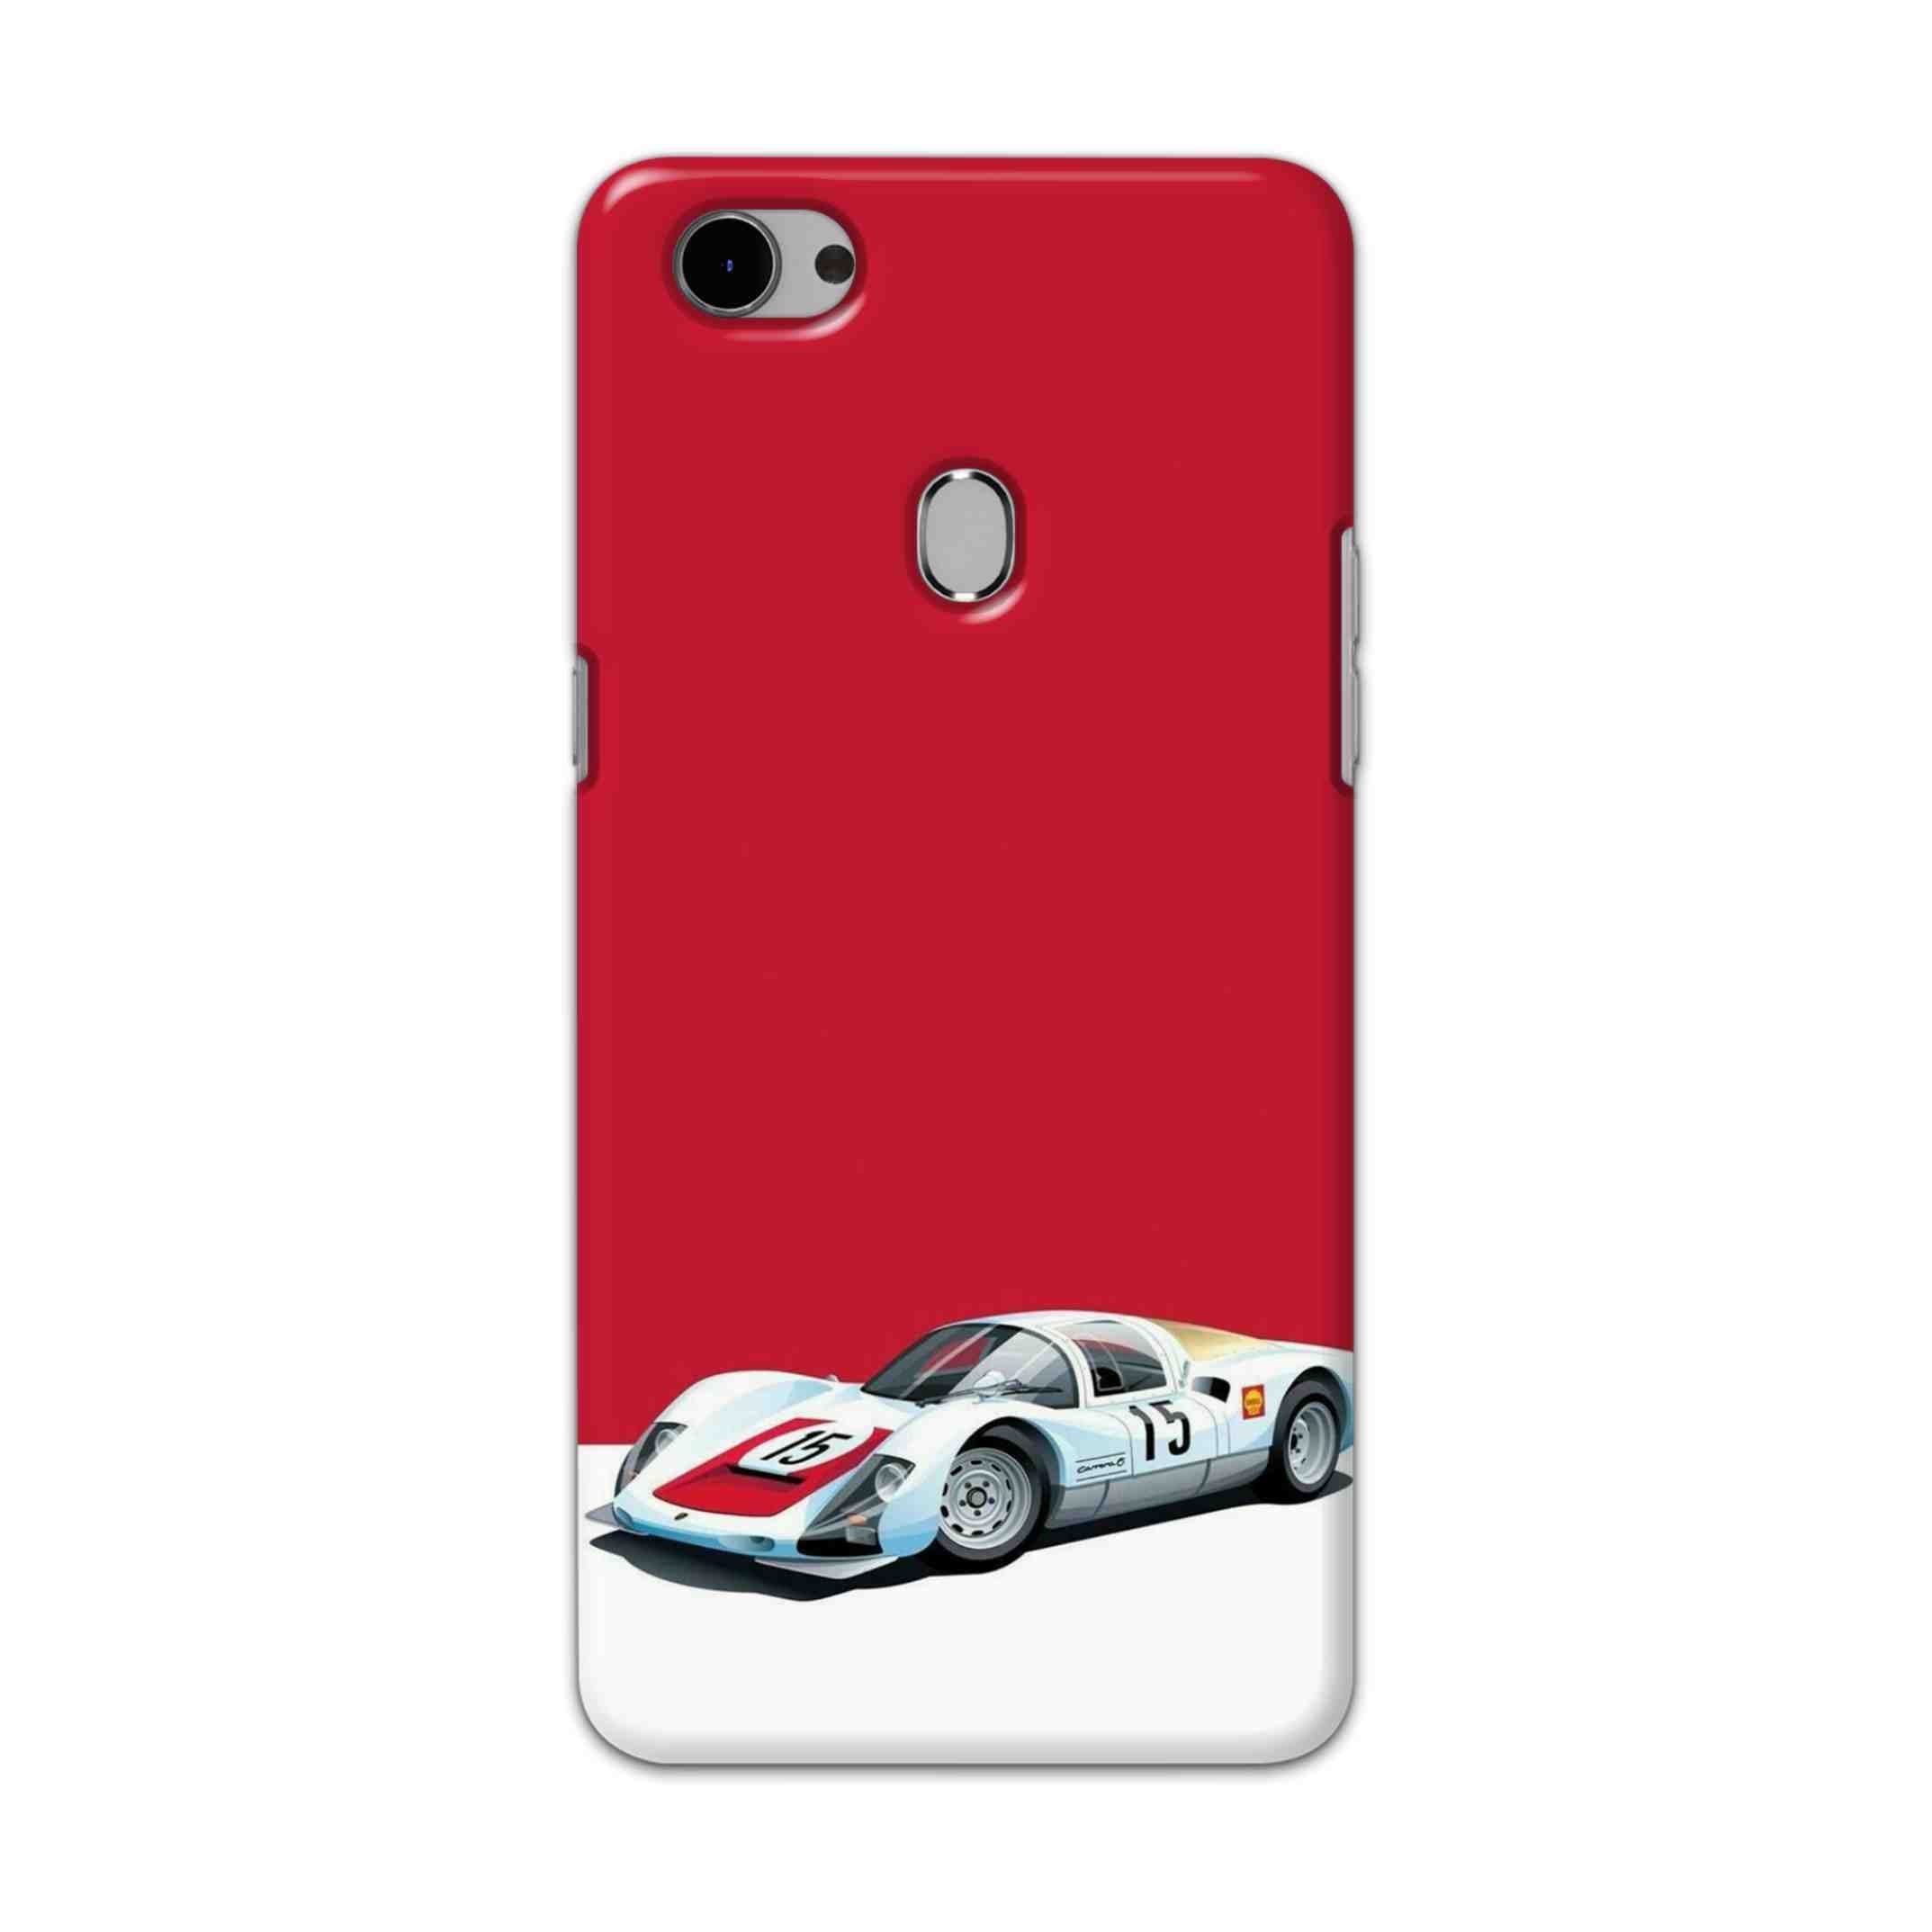 Buy Ferrari F15 Hard Back Mobile Phone Case Cover For Oppo F7 Online